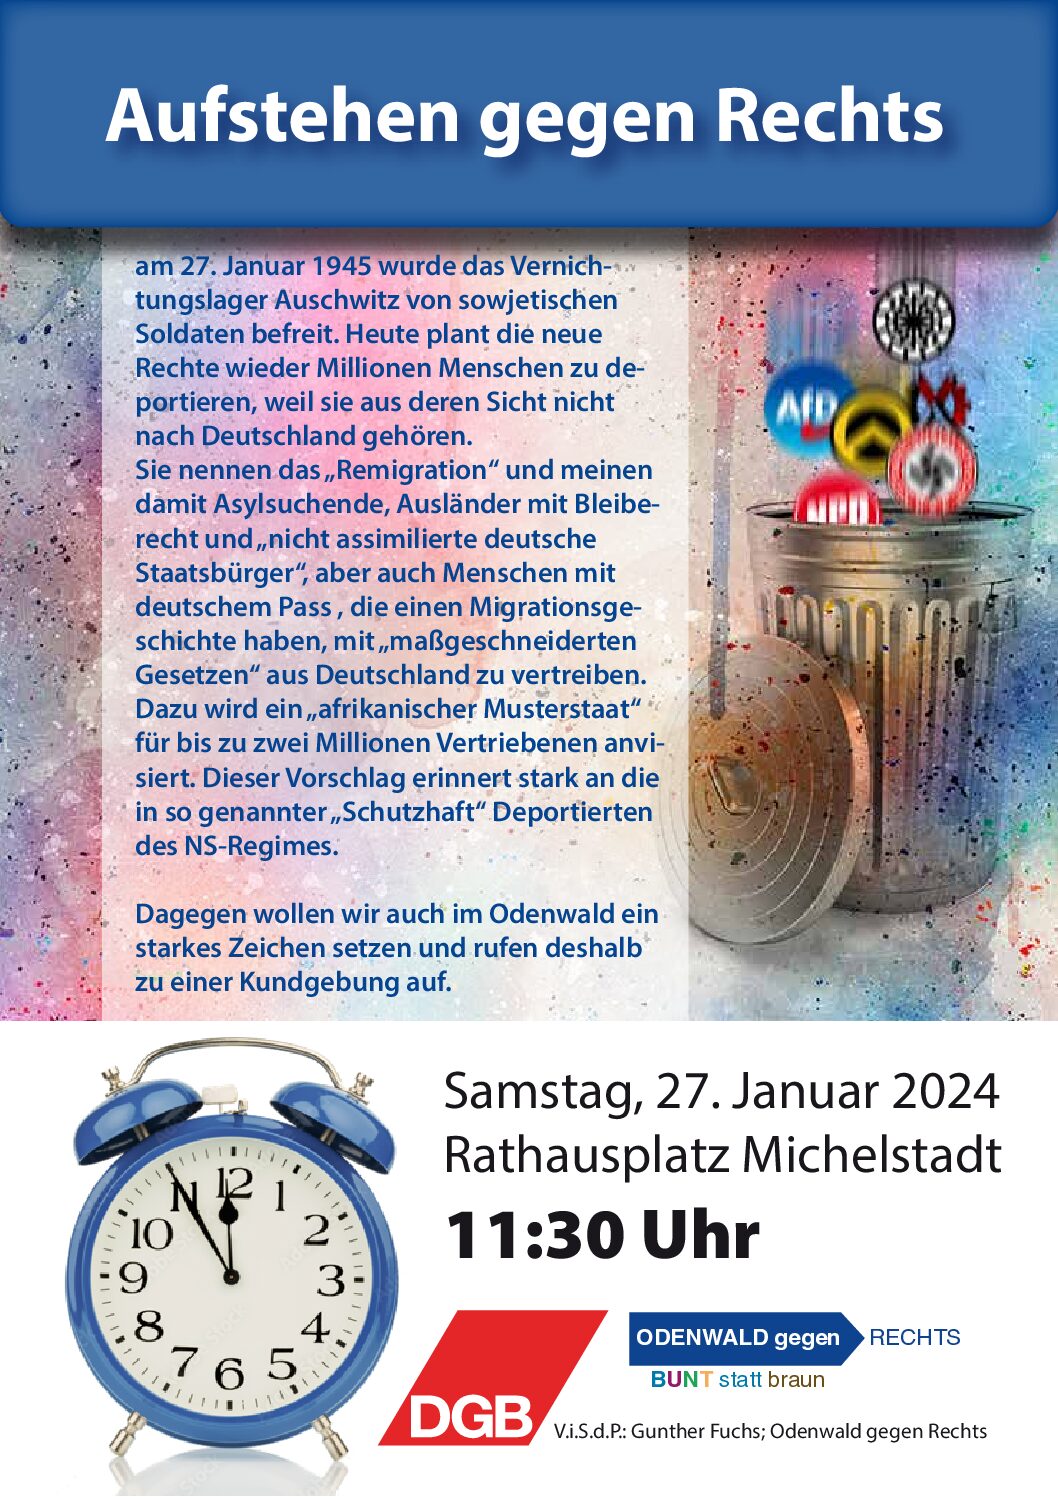 Kommt zur Kundgebung „Aufstehen gegen Rechts“ am 27.1. um 11:30 Uhr auf dem Rathausplatz in Michelstadt!